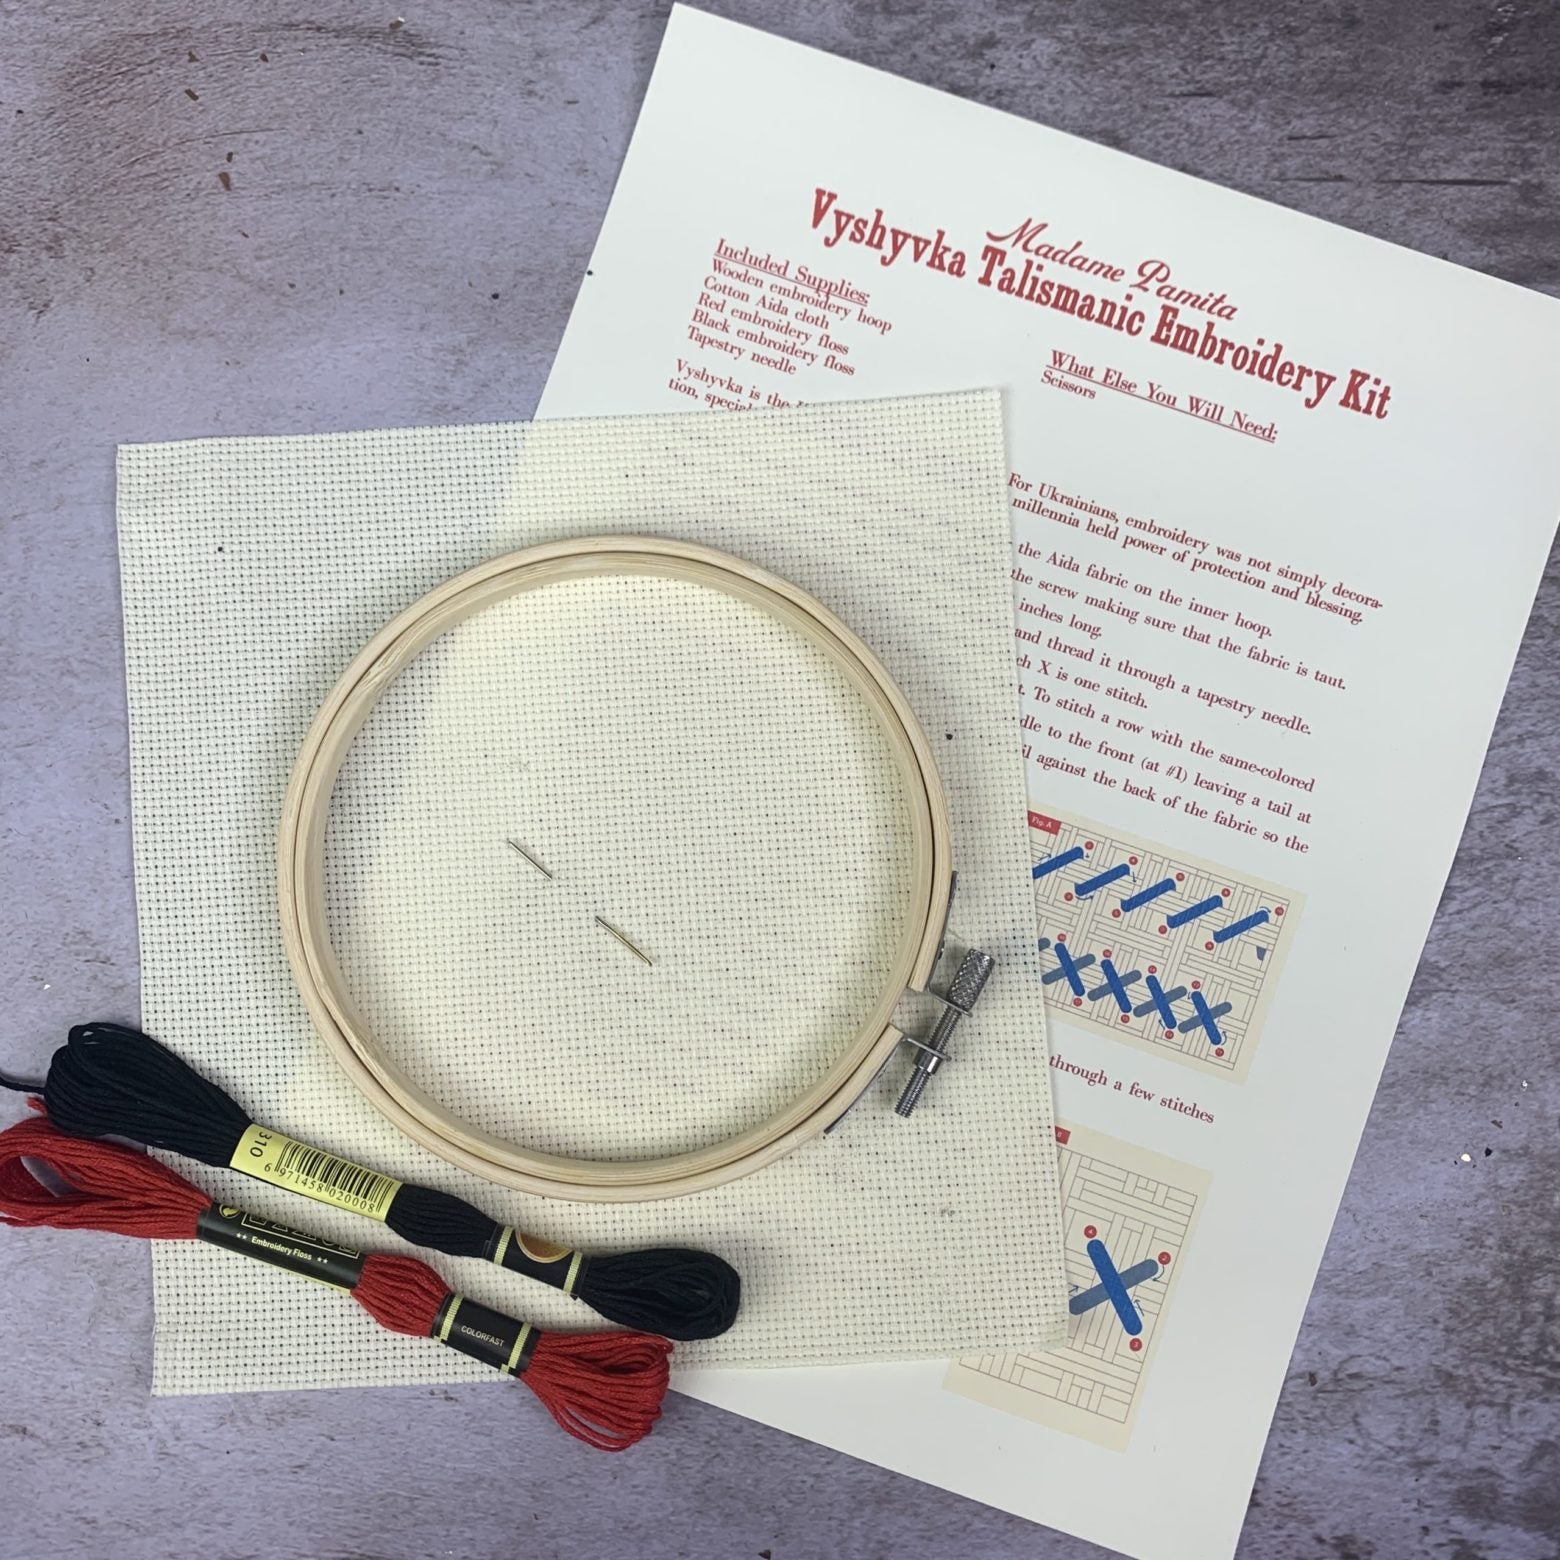 Vyshyvka Talismanic Embroidery Kit